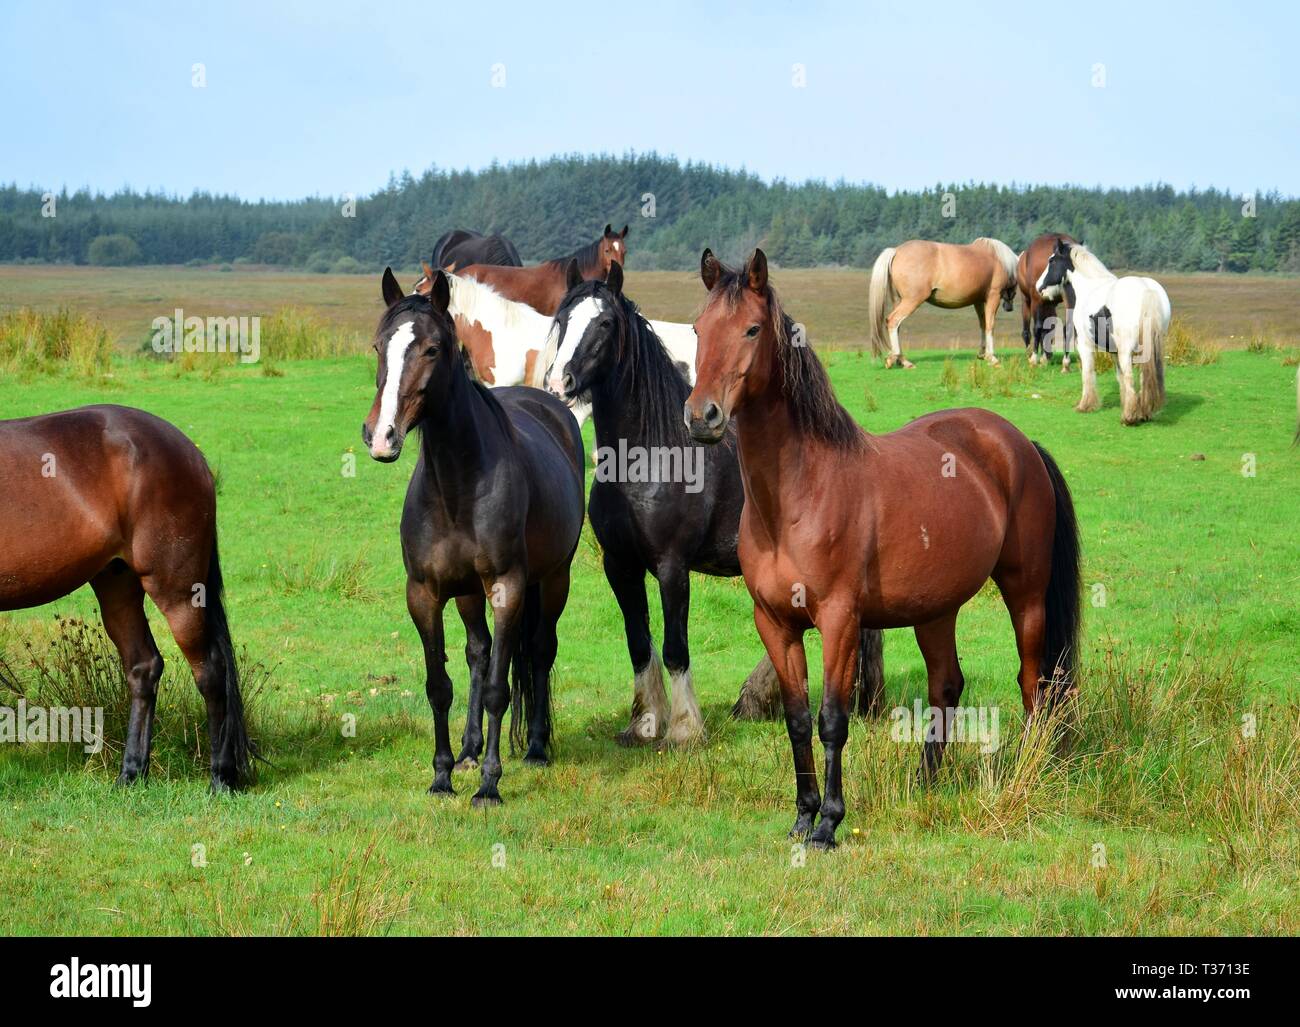 Pferde auf einer Wiese in Irland. Drei Pferde vor, aufmerksam in die gleiche Richtung schauen. Irische Landschaft im Hintergrund. Stockfoto